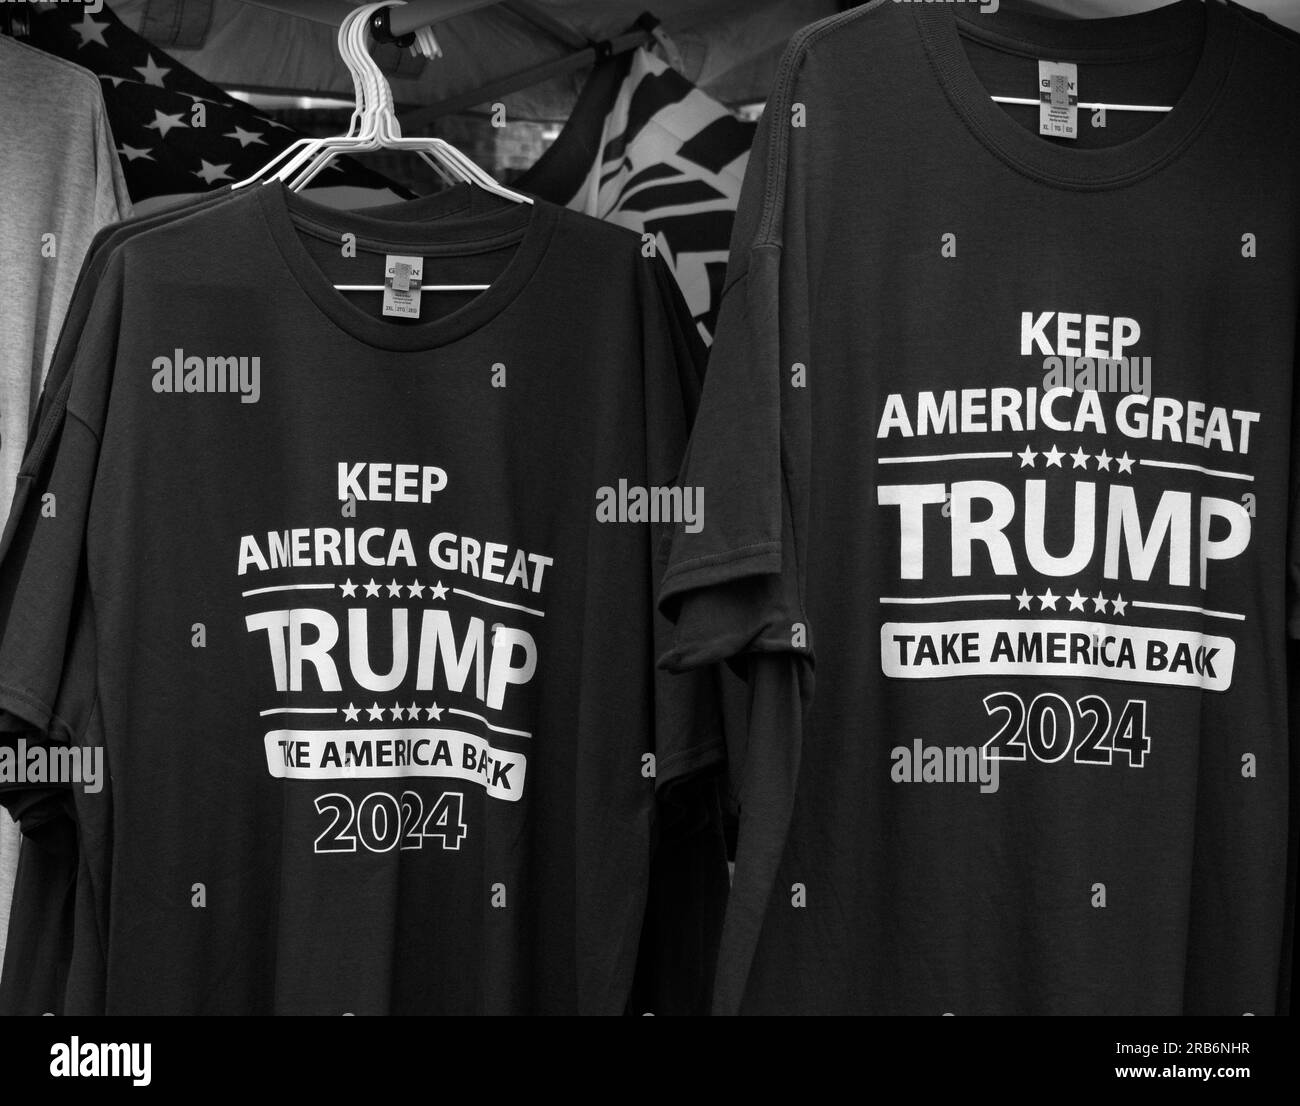 Les partisans de l'ancien président américain Donald Trump vendent des T-shirts pour promouvoir l'élection de Trump en 2024 lors d'un événement public à Abingdon, Virginie, États-Unis Banque D'Images